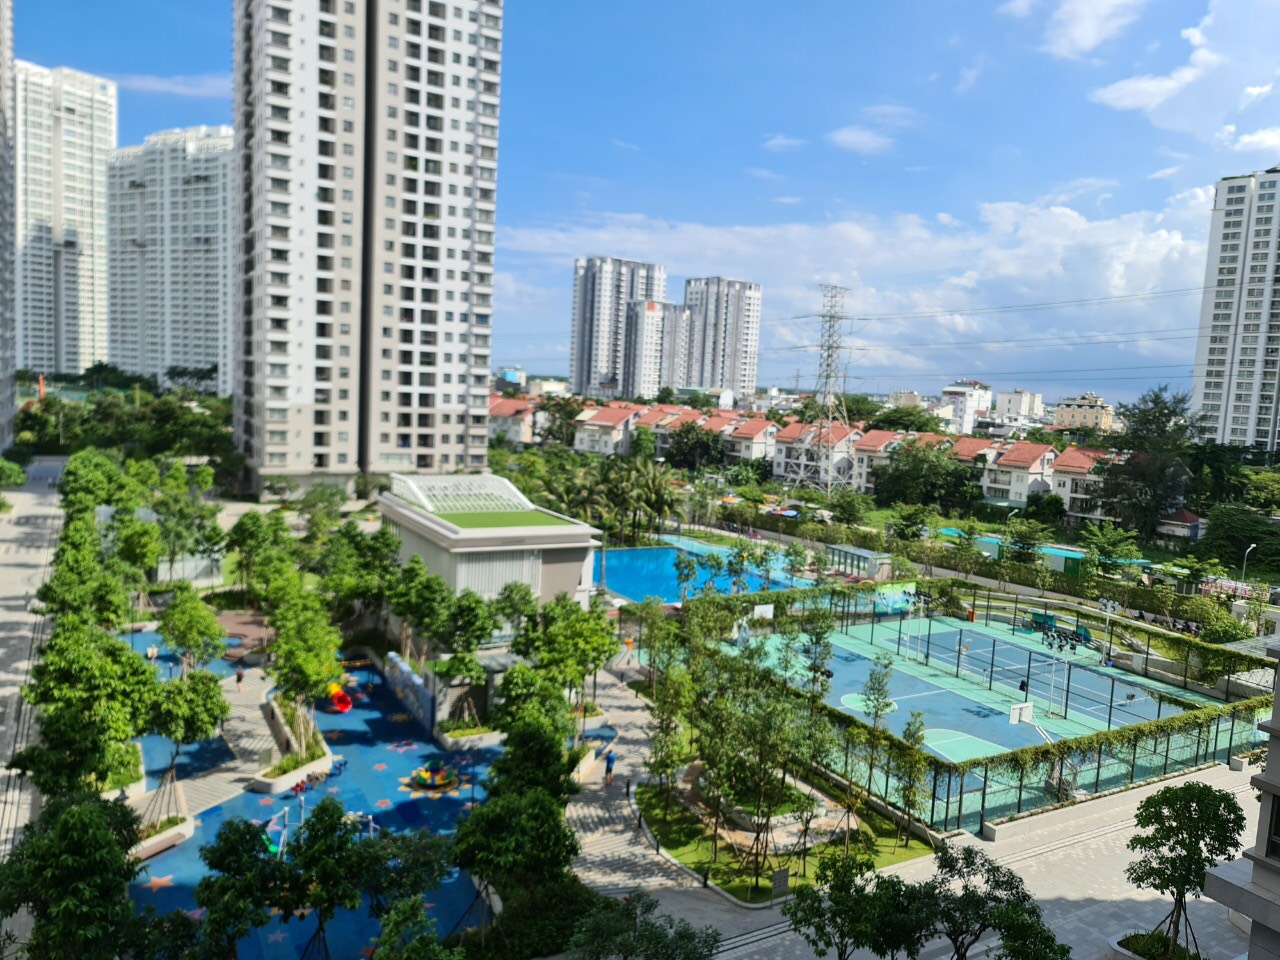 Chuyển nhượng nhanh căn hộ giá tốt nhất thị trường Saigon South Residence - Phú Mỹ Hưng; Liên hệ : Hoàng Khang